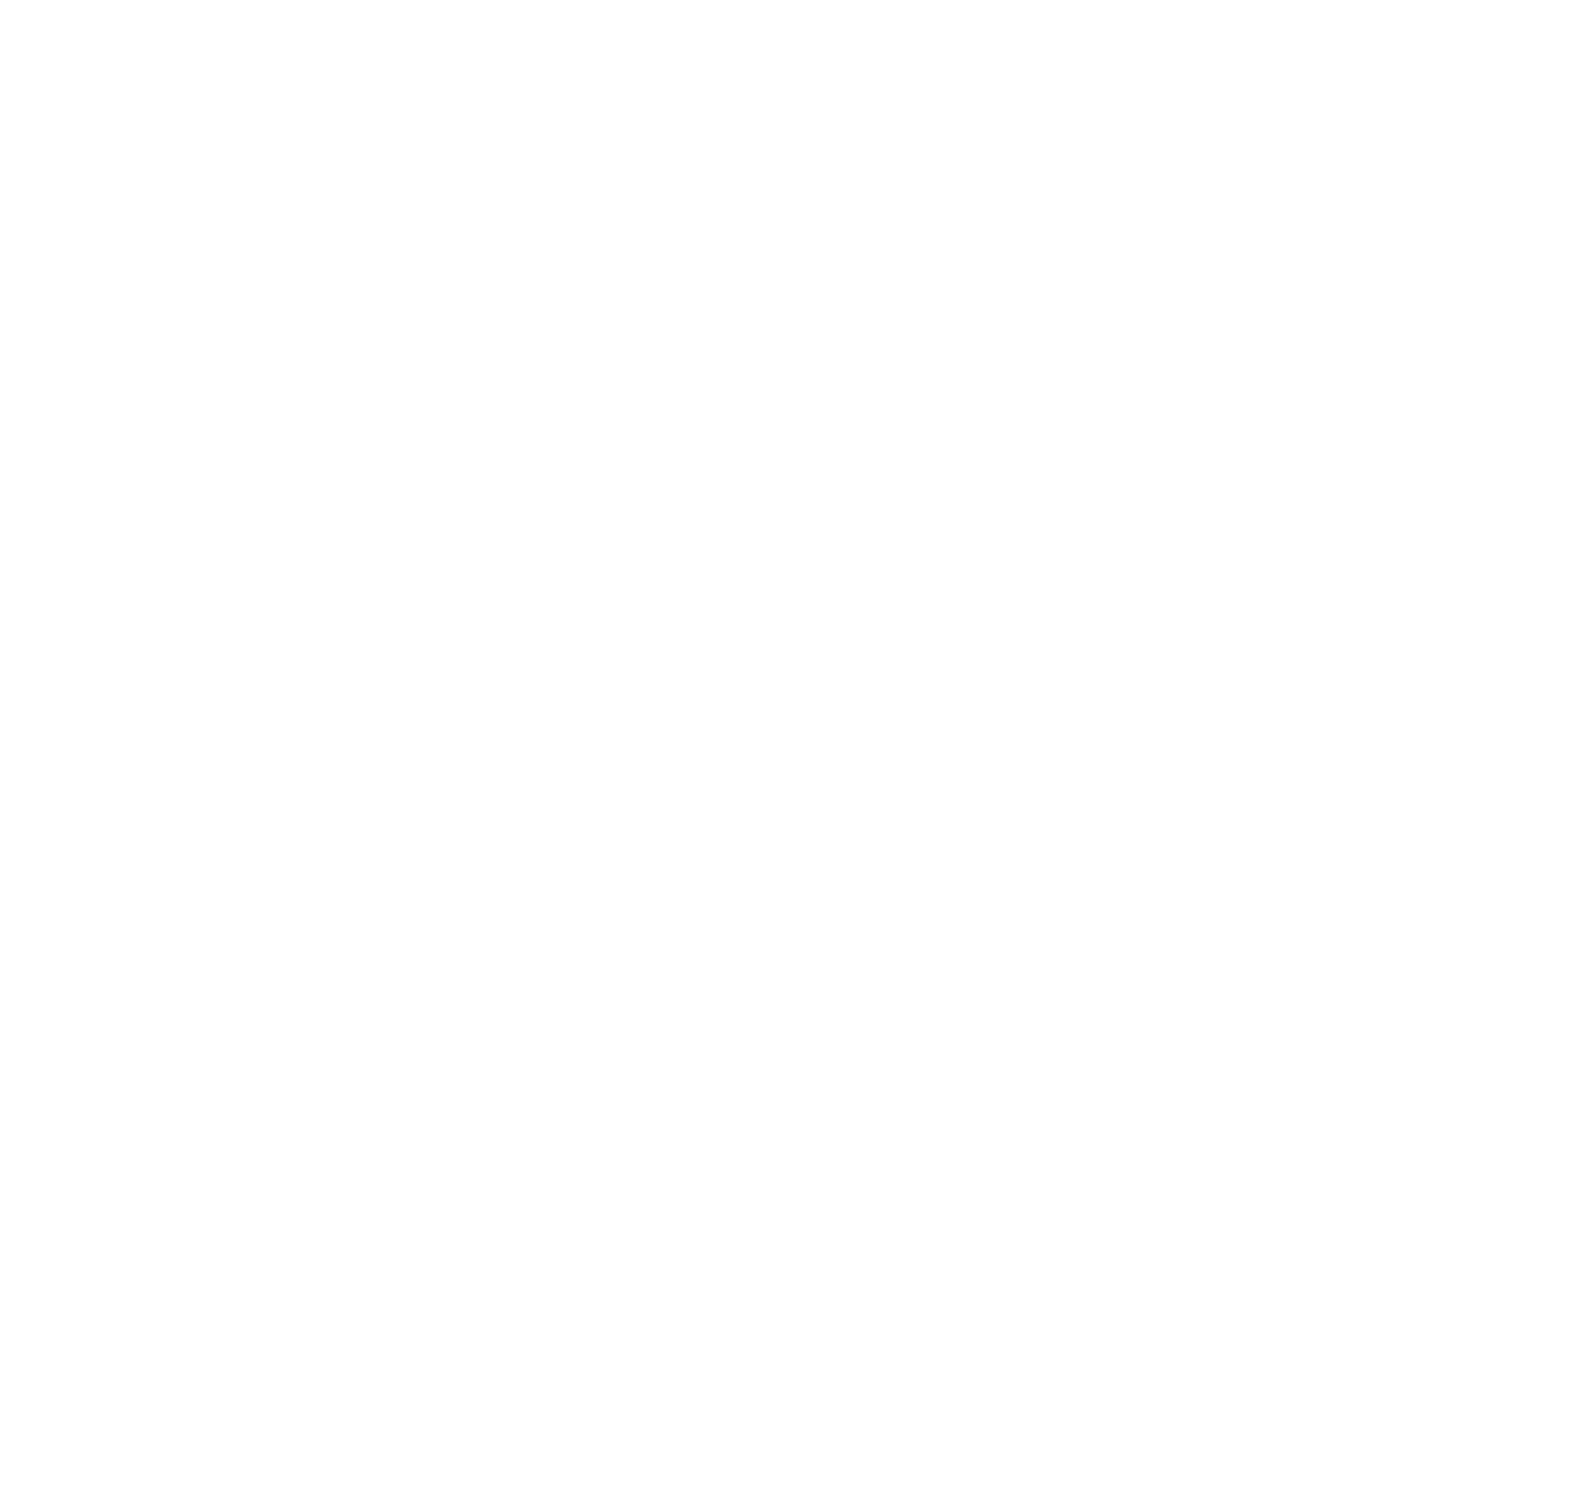 G-bits Network Technology  logo pour fonds sombres (PNG transparent)